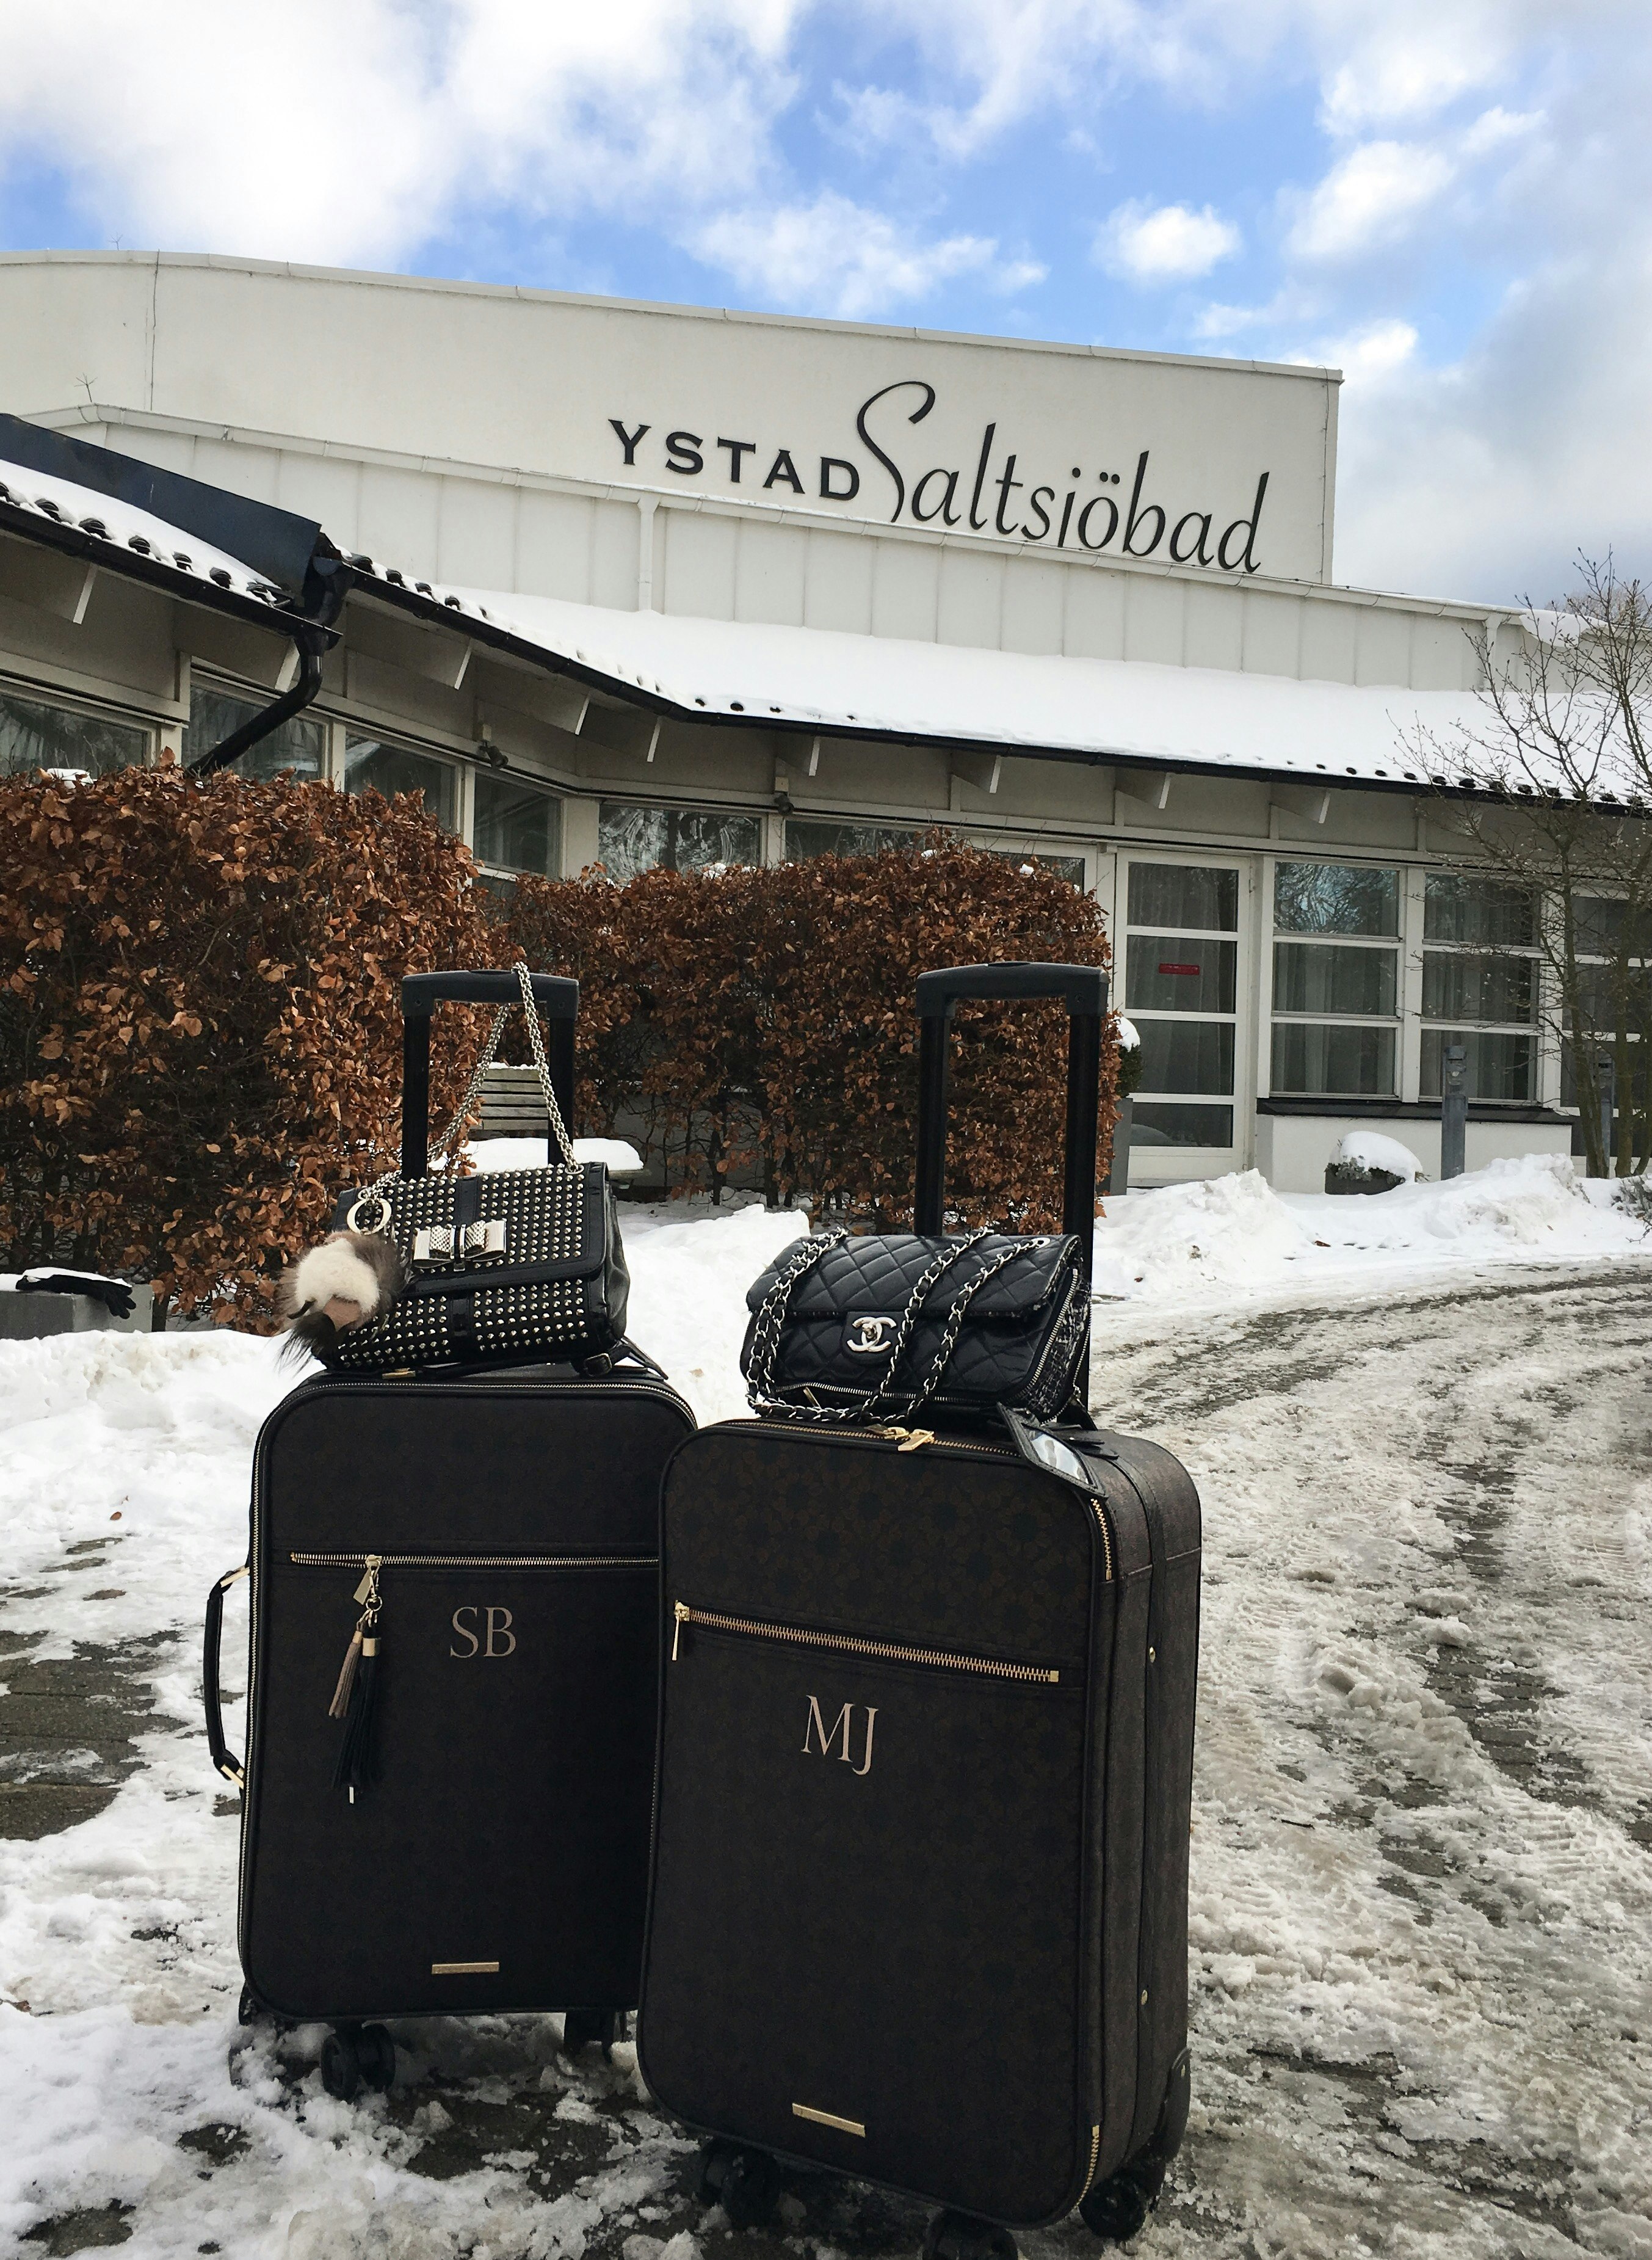 Ugens sunde anbefaling: Getaway til Ystad Saltsjöbad 